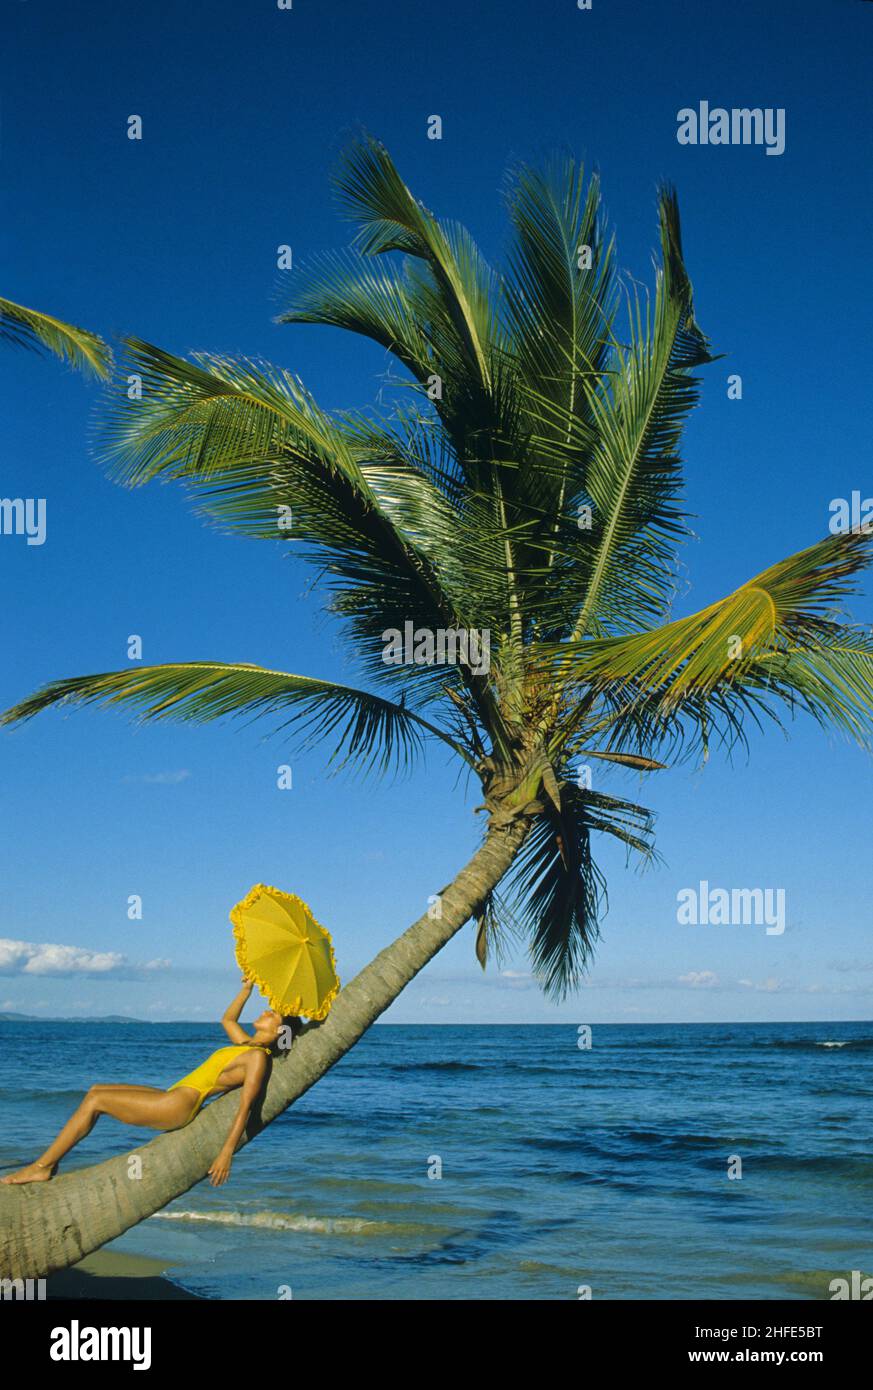 belle beauté de cheveux noirs couché sur le profil de palmier avec yrlllow parapluie bleu ciel eau de mer fond tropical porto rico Banque D'Images